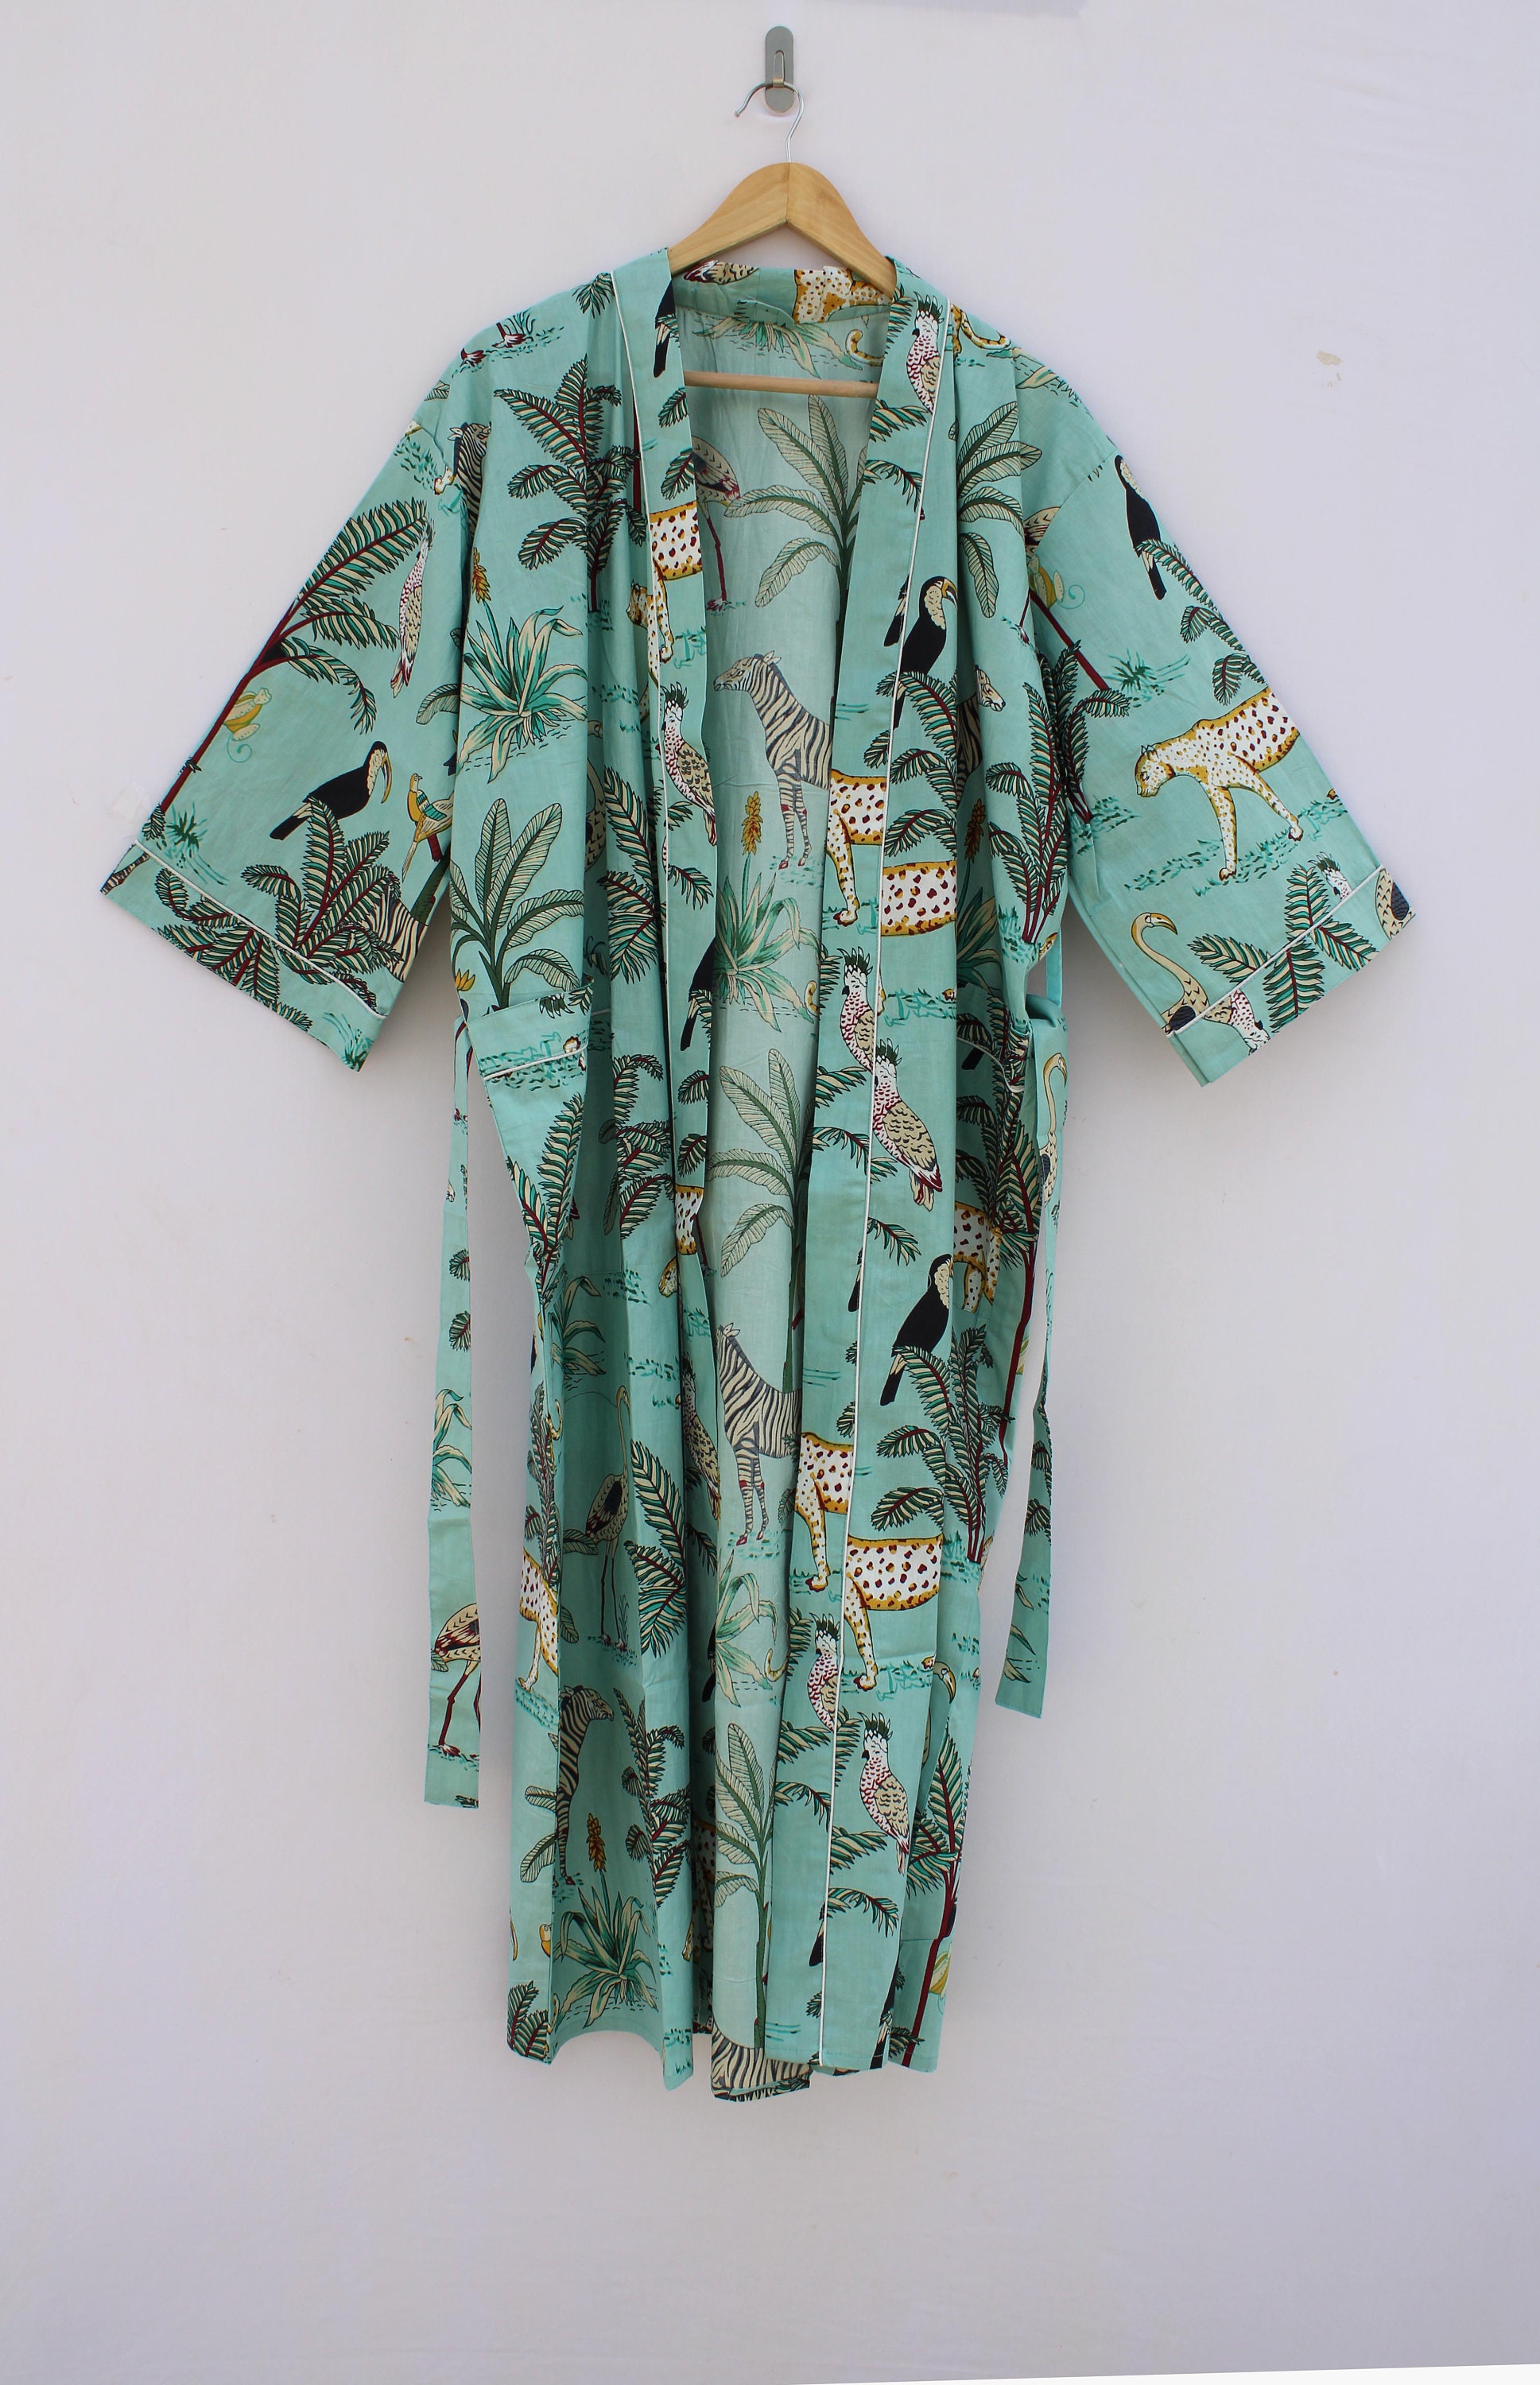 STRH Animal Print Kimono 100% Cotton Kimono Indian Kimono - Etsy UK